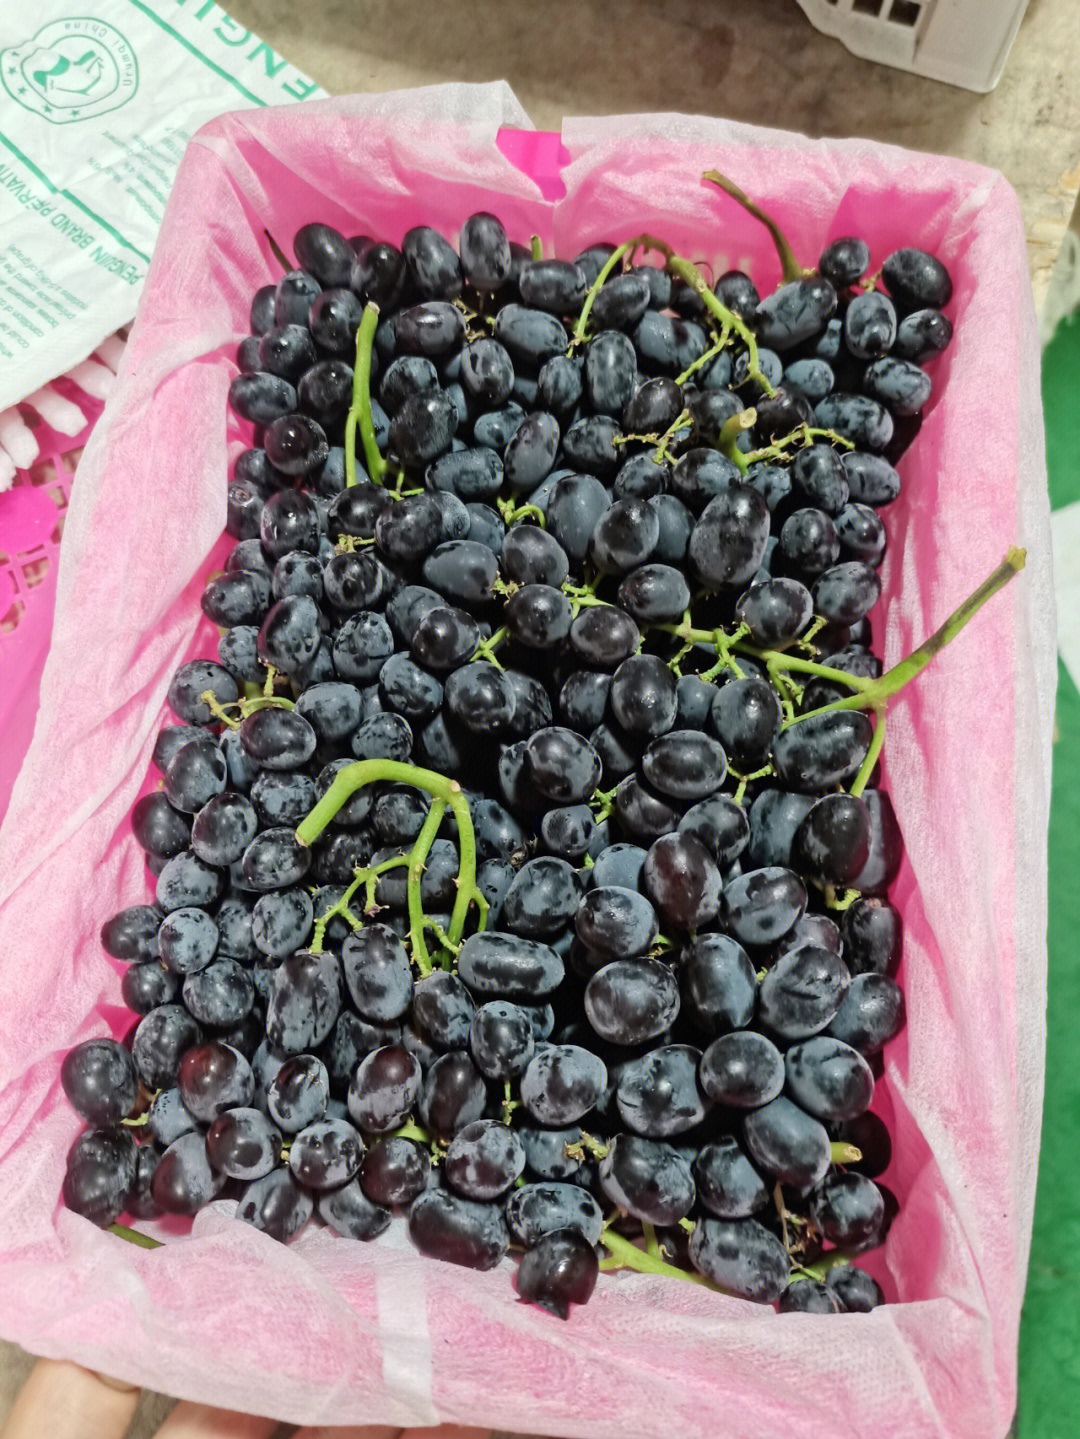 我的团长我的团#社区团购团长#新疆水果 无核紫,也就是黑加仑